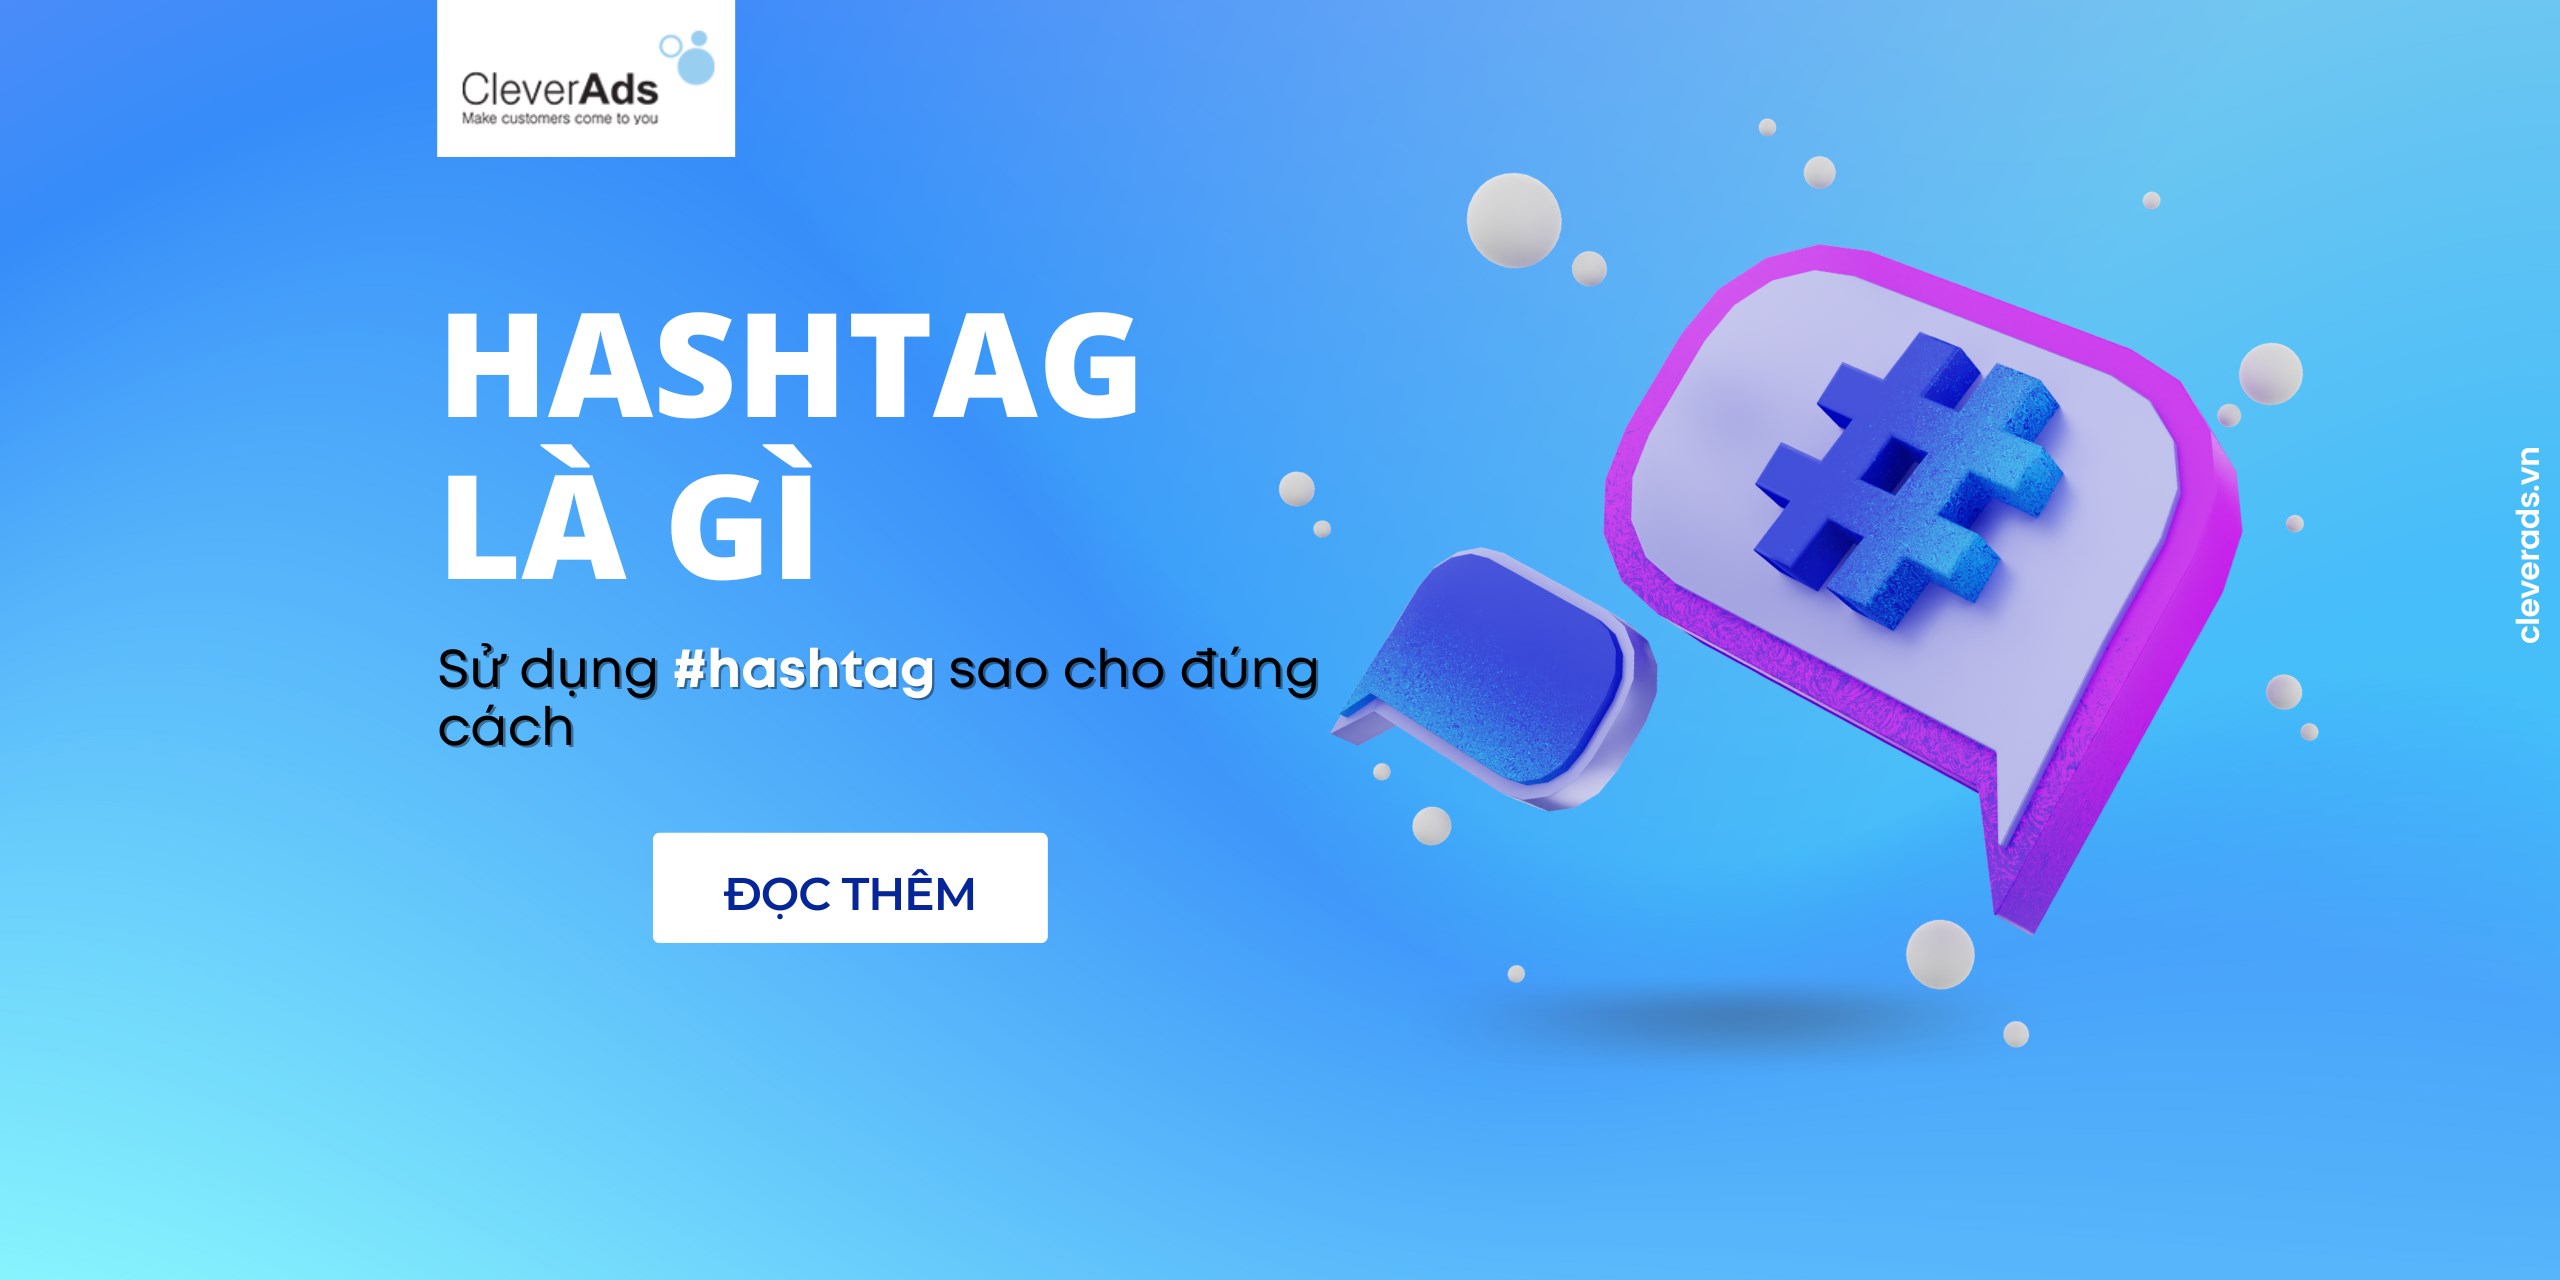 Hashtag là gì? Tips sử dụng hashtag tối ưu chiến dịch